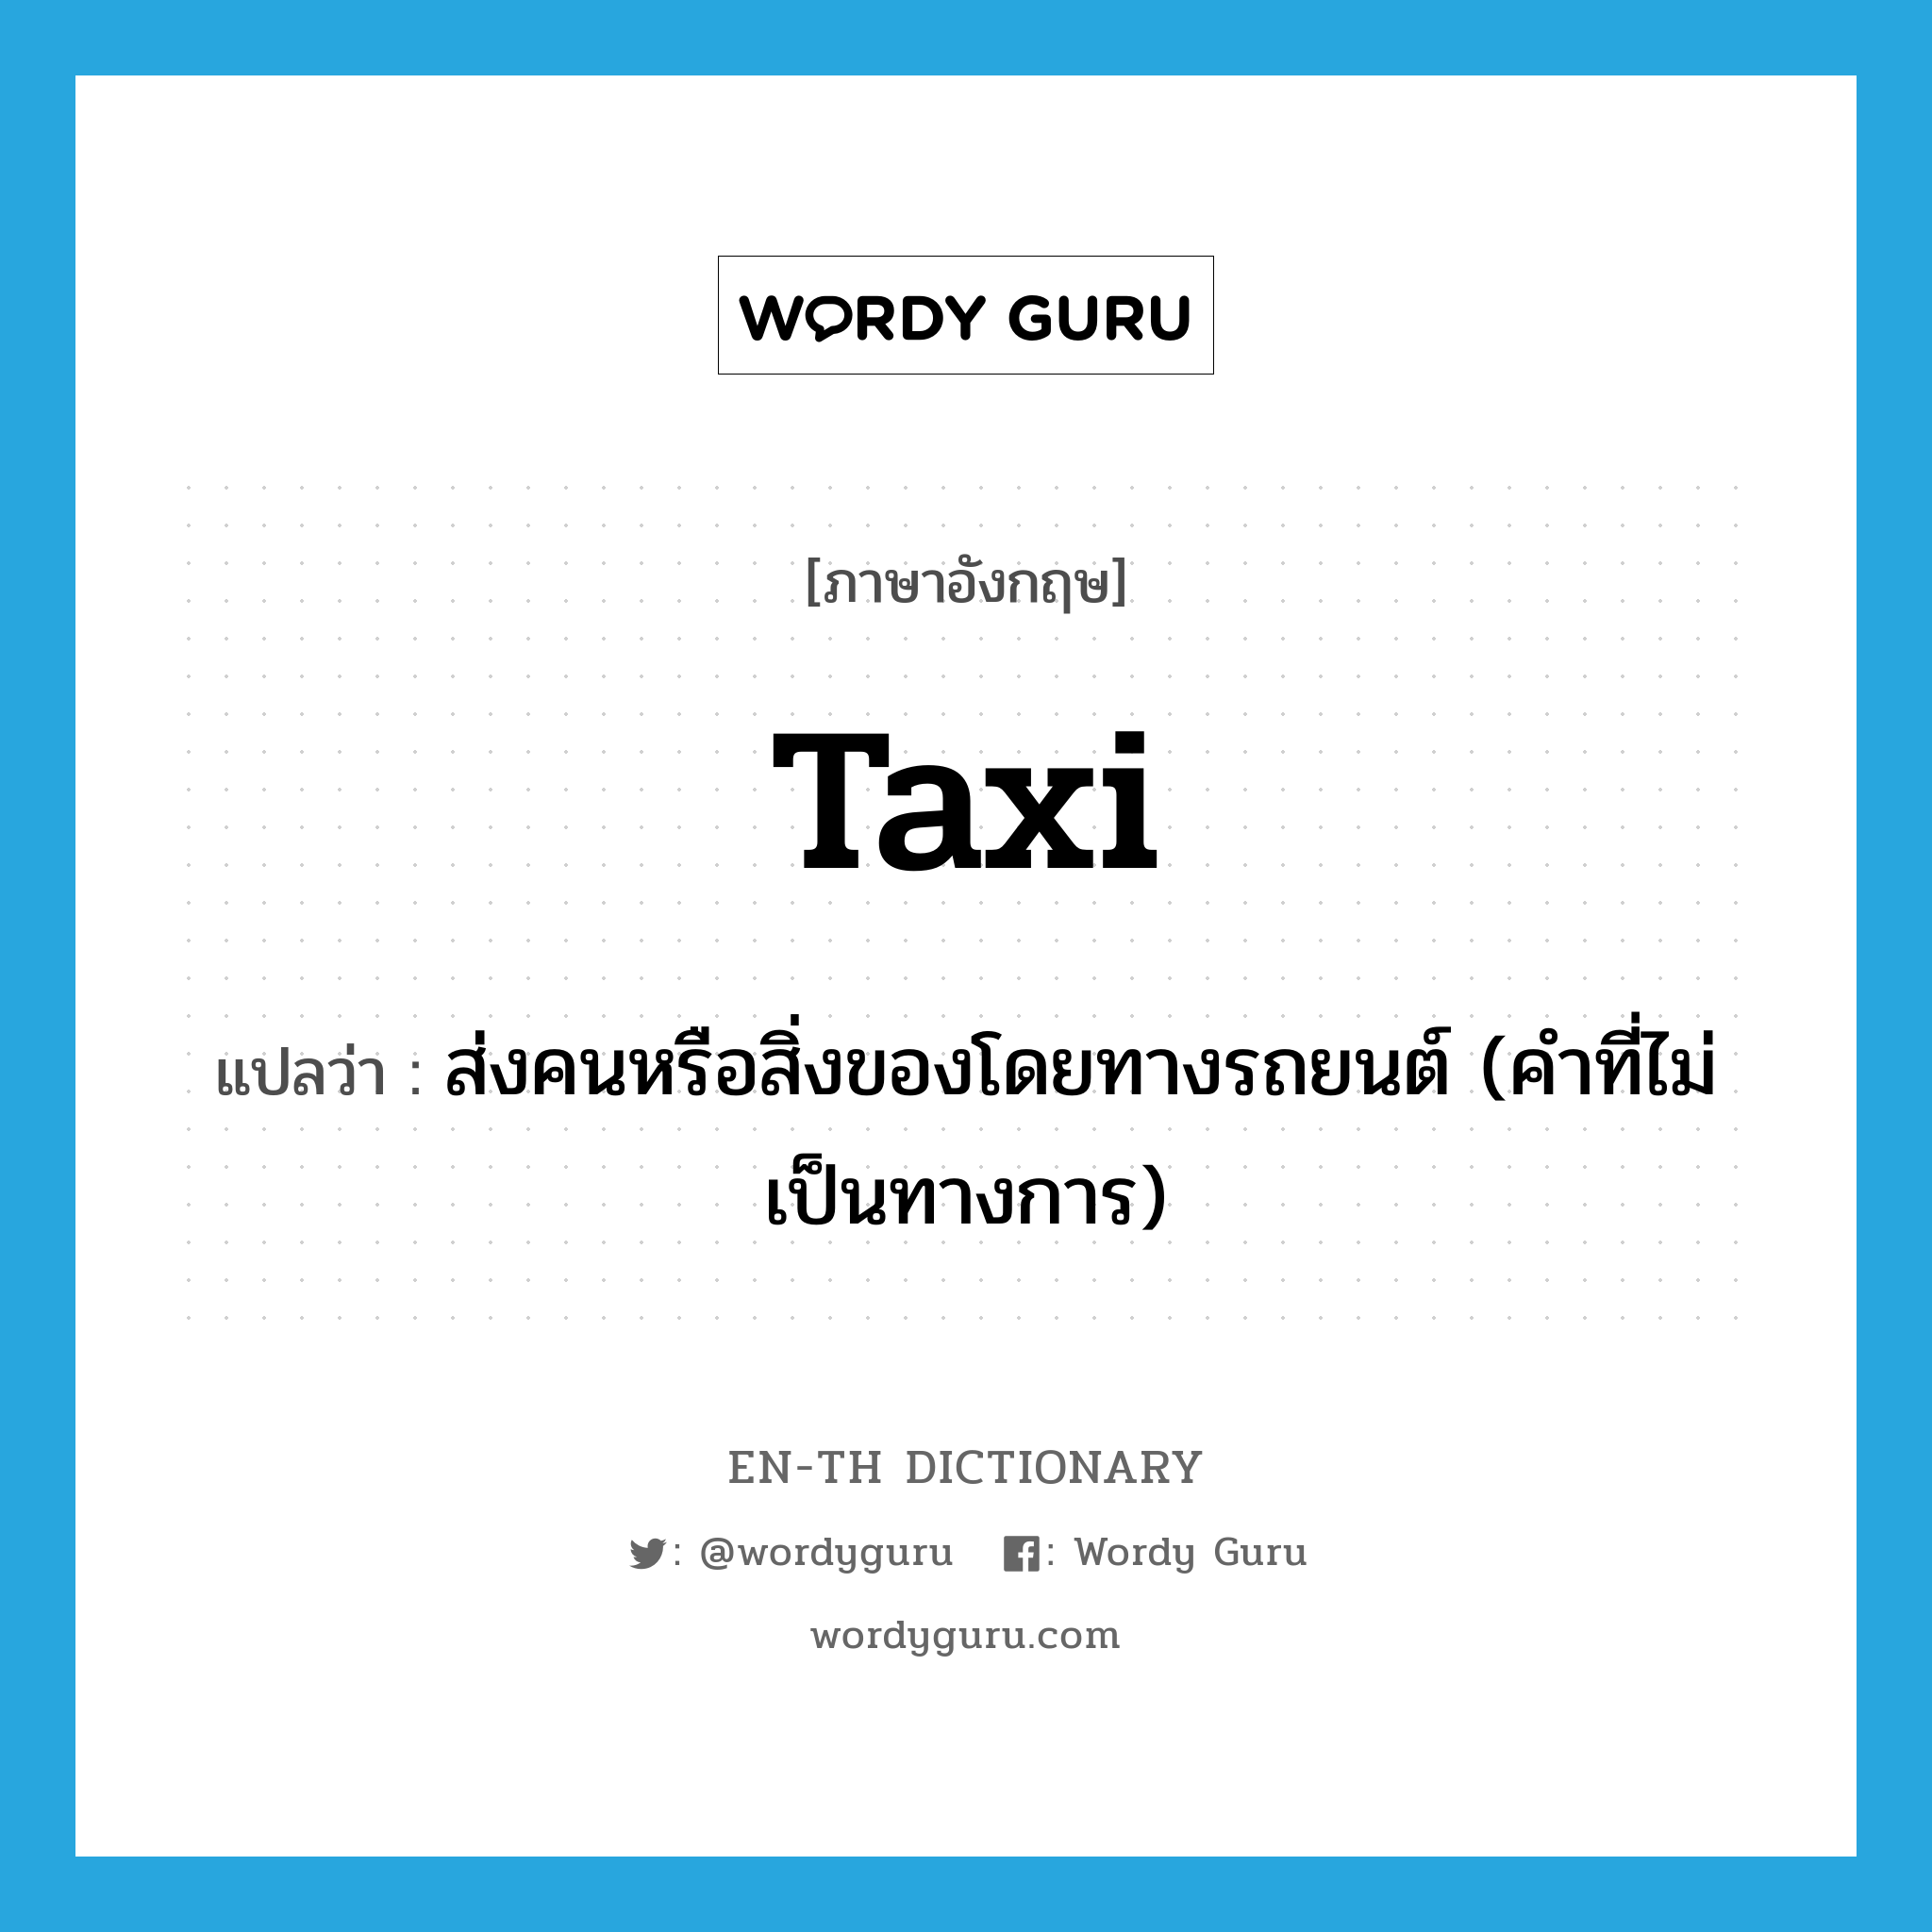 ส่งคนหรือสิ่งของโดยทางรถยนต์ (คำที่ไม่เป็นทางการ) ภาษาอังกฤษ?, คำศัพท์ภาษาอังกฤษ ส่งคนหรือสิ่งของโดยทางรถยนต์ (คำที่ไม่เป็นทางการ) แปลว่า taxi ประเภท VI หมวด VI